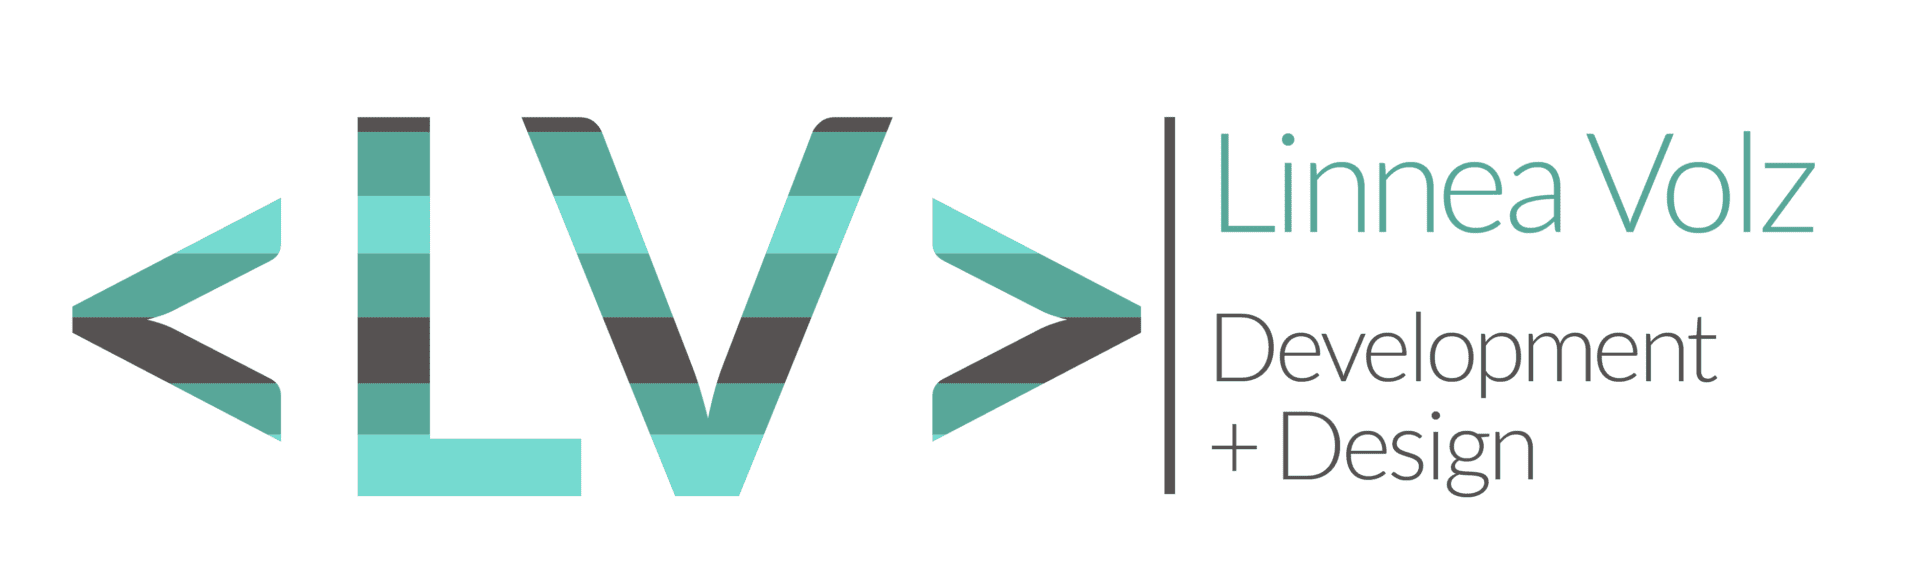 The logo for linna voz development and design.